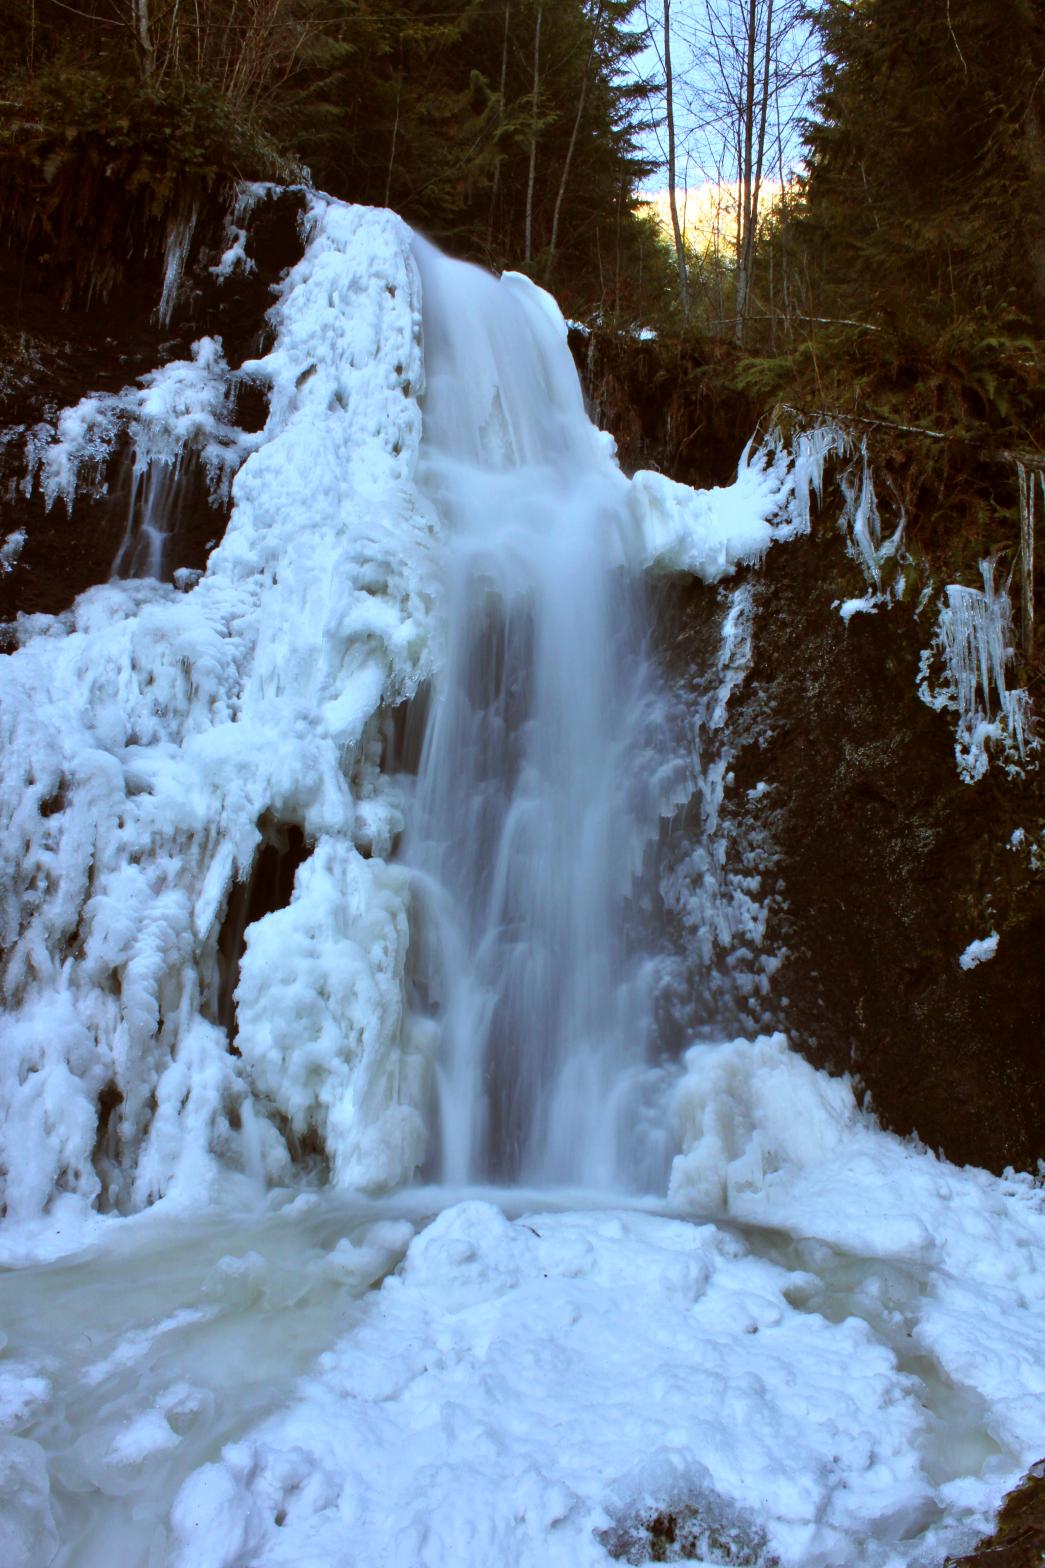 Icy lower tier of Lower Suiattle Falls